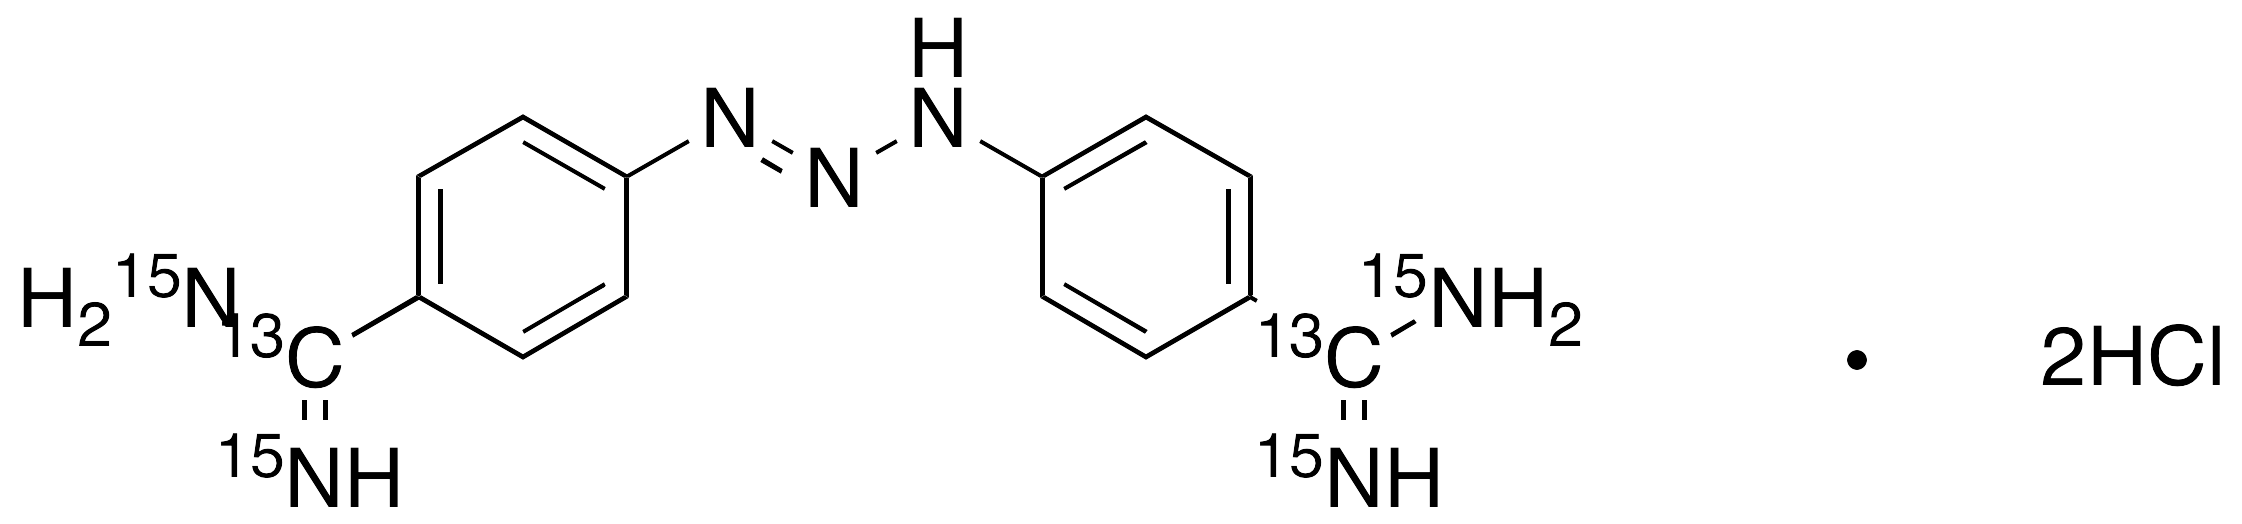 Diminazene-13C2,15N4 Dihydrochloride (major)